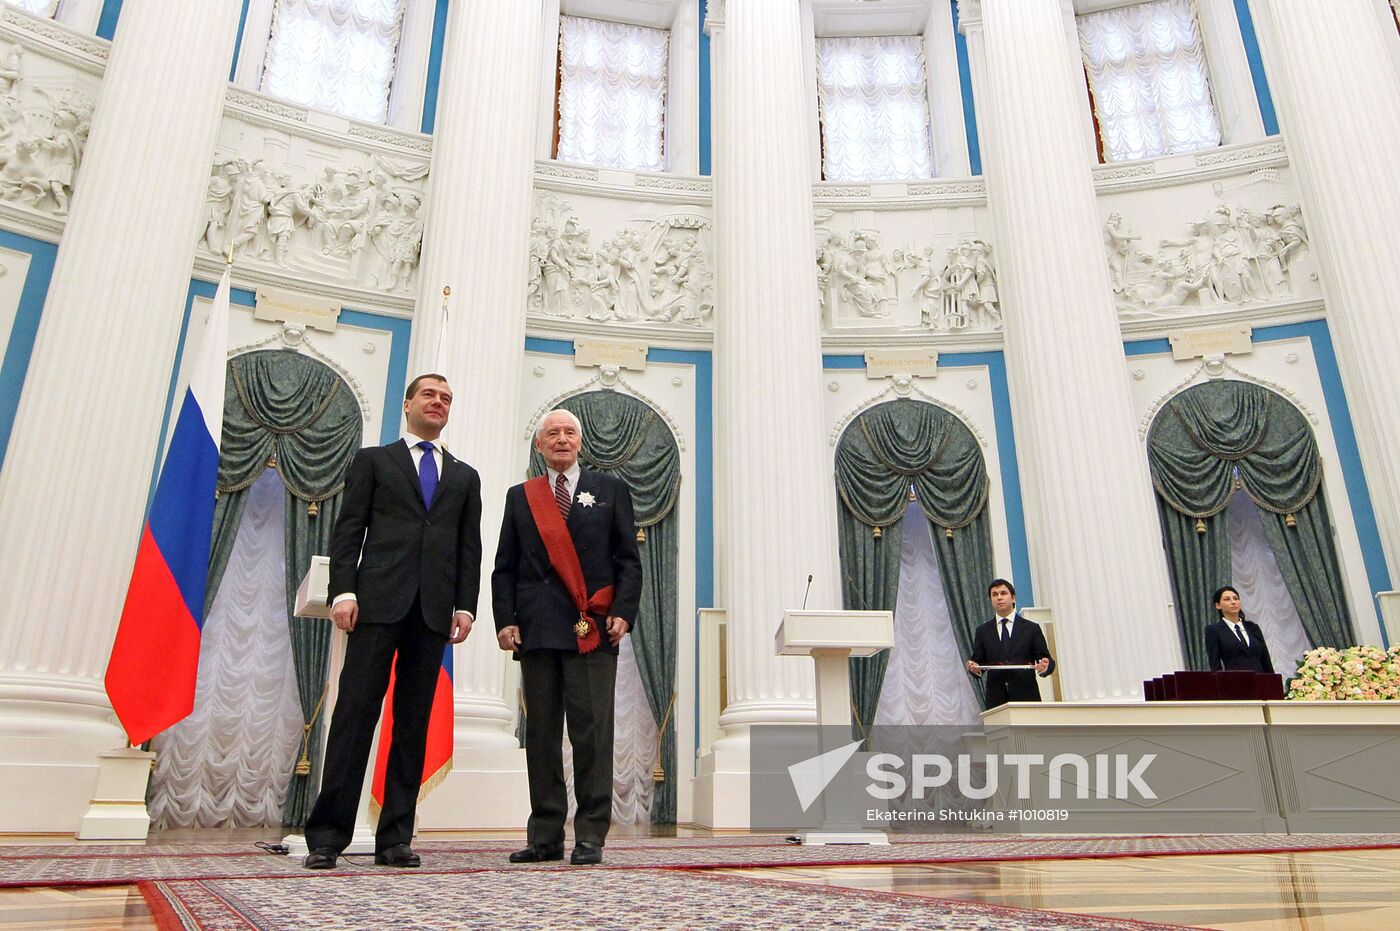 Dmitry Medvedev presents awards in Kremlin